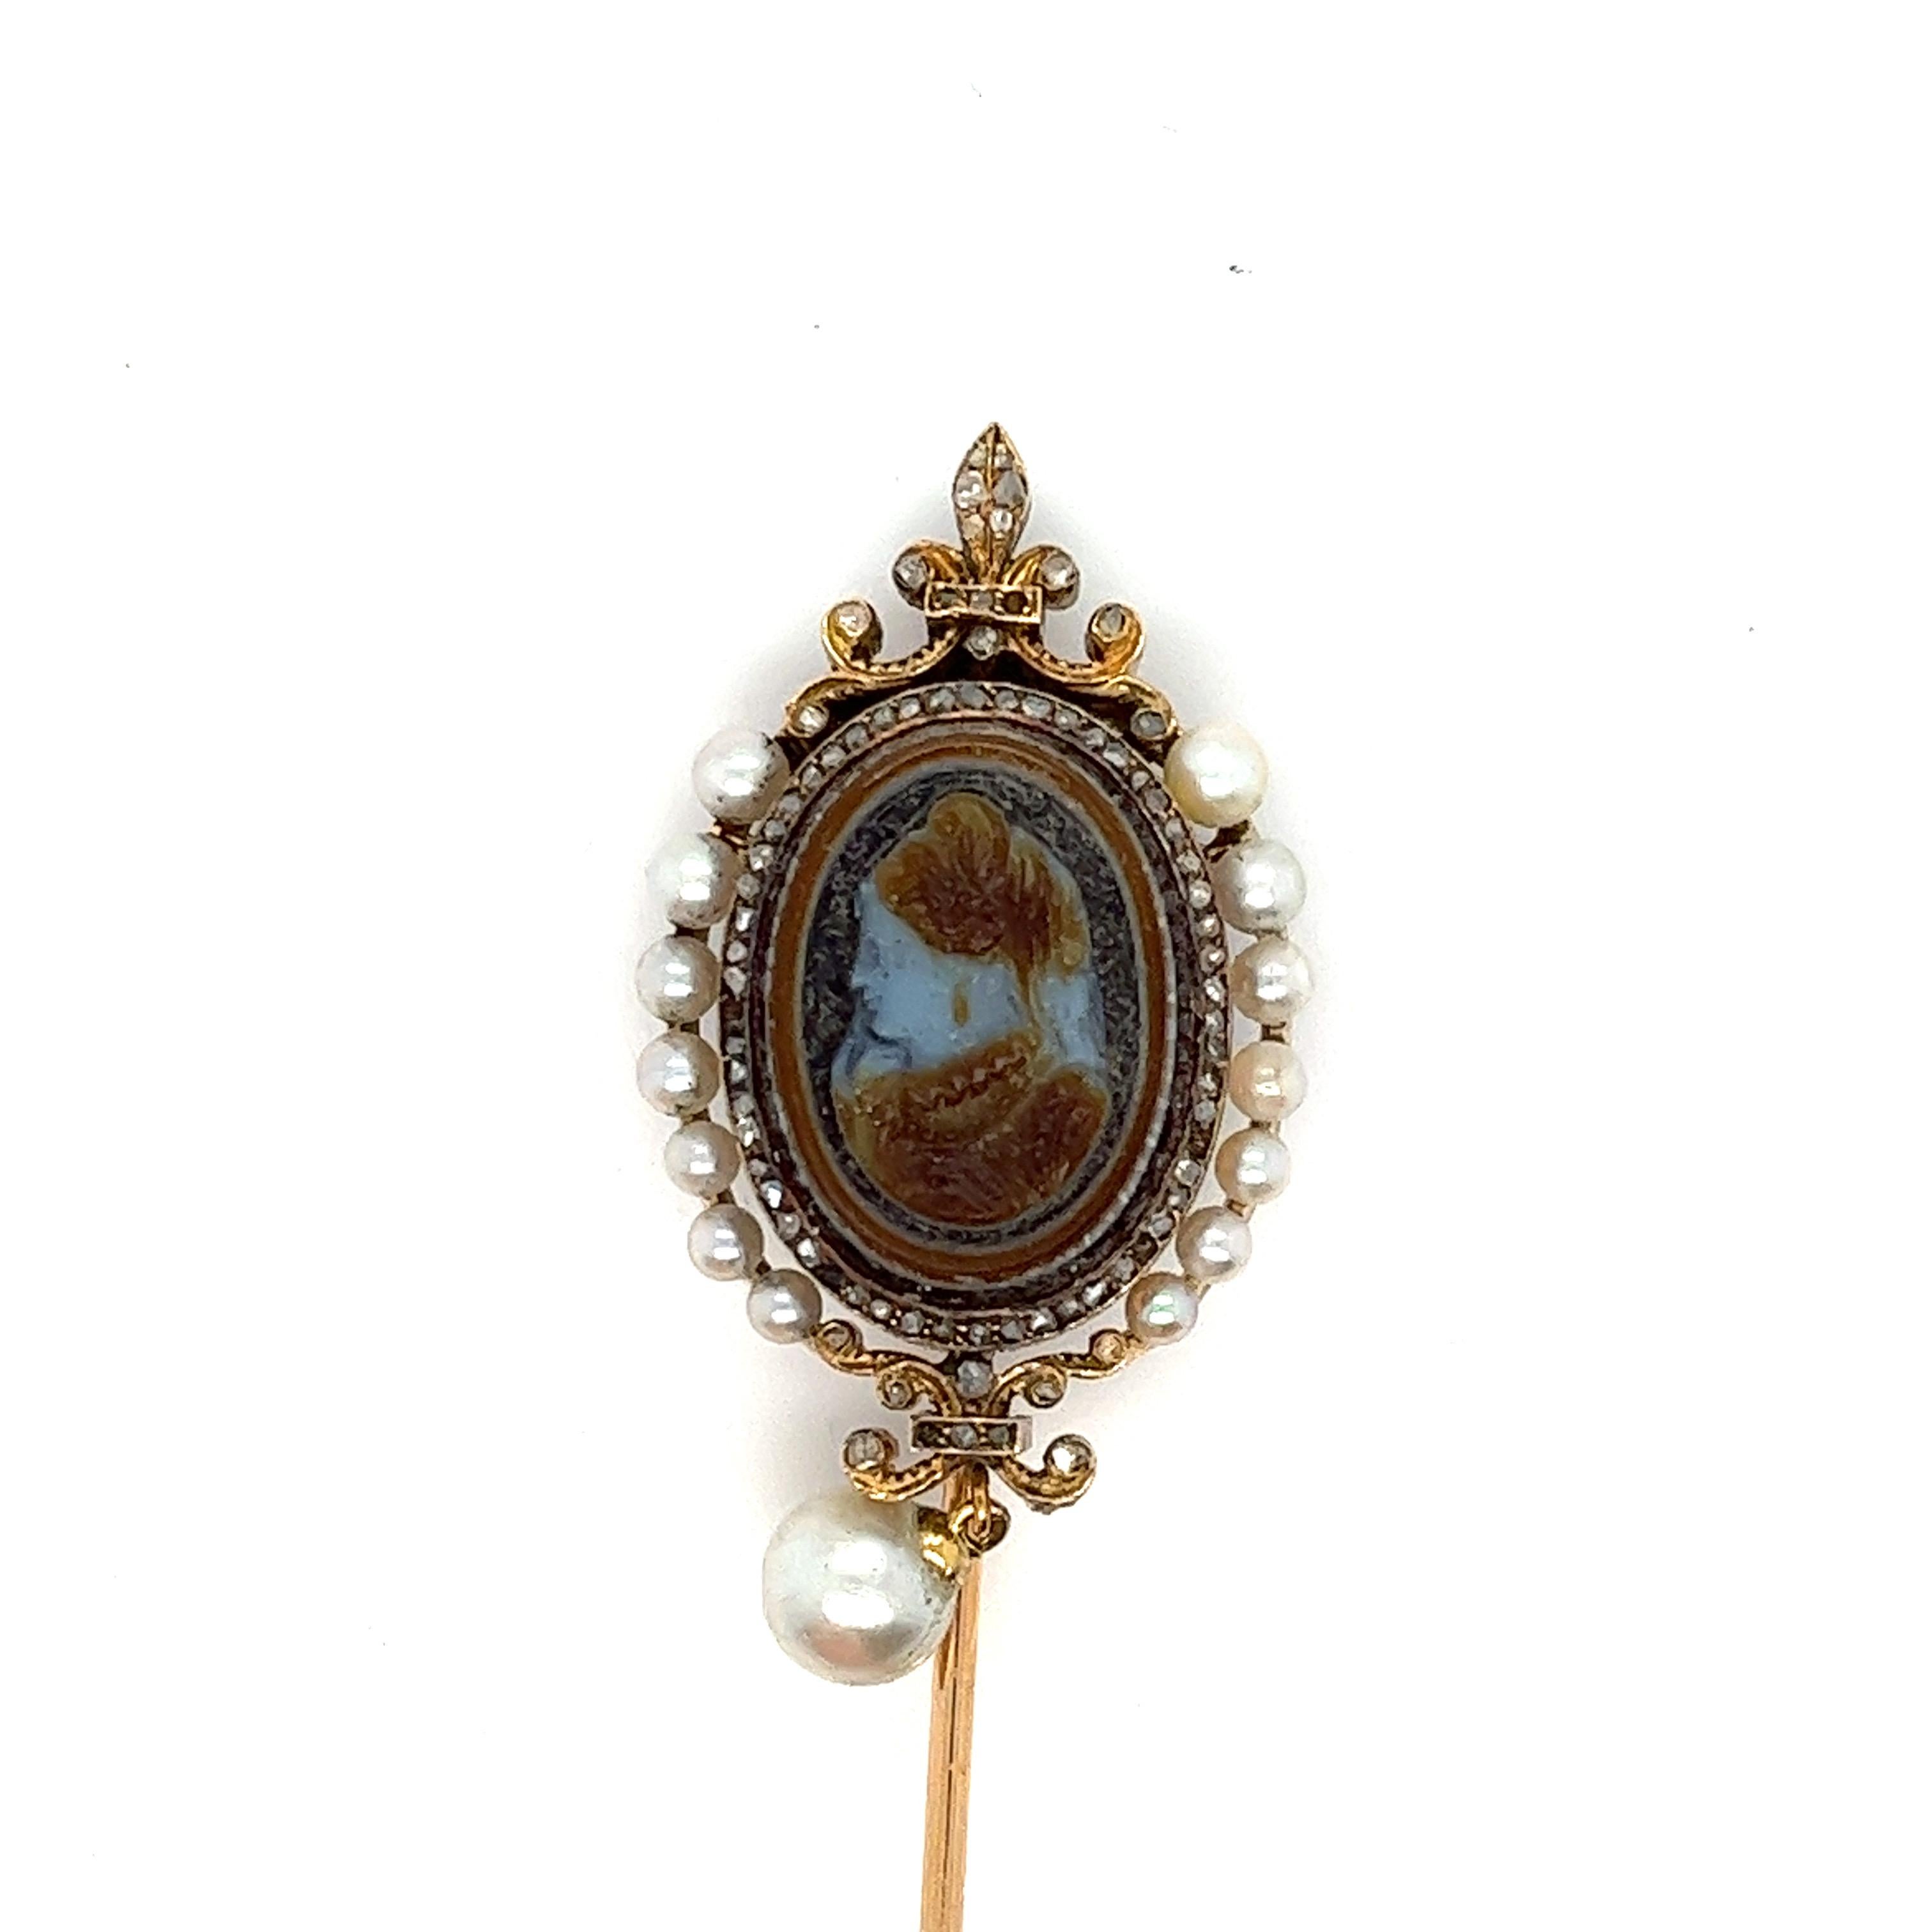 Rare Antique Sardonyx Cameo Pin - 18K Gold, Diamonds, and Pearls, Circa 1850. In Good Condition For Sale In Miami, FL